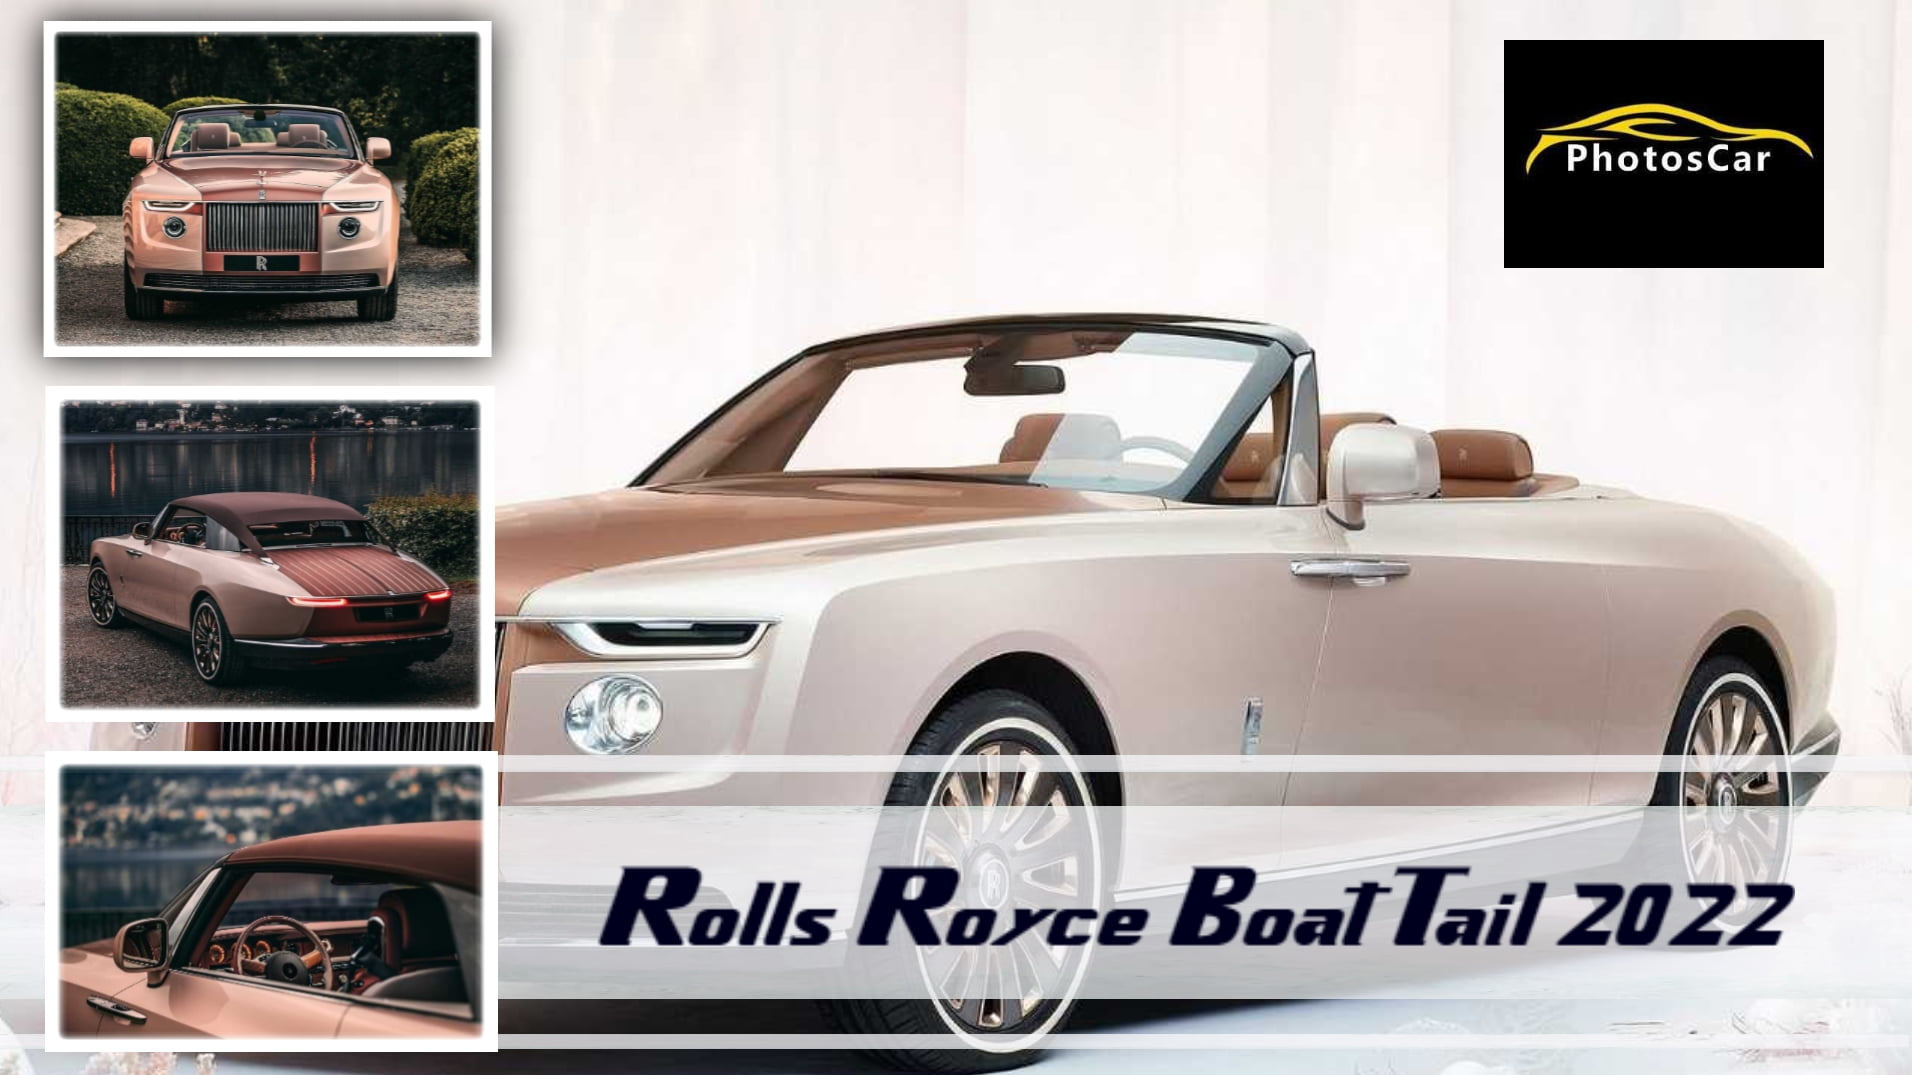 Rolls Royce Boat Tail 2022